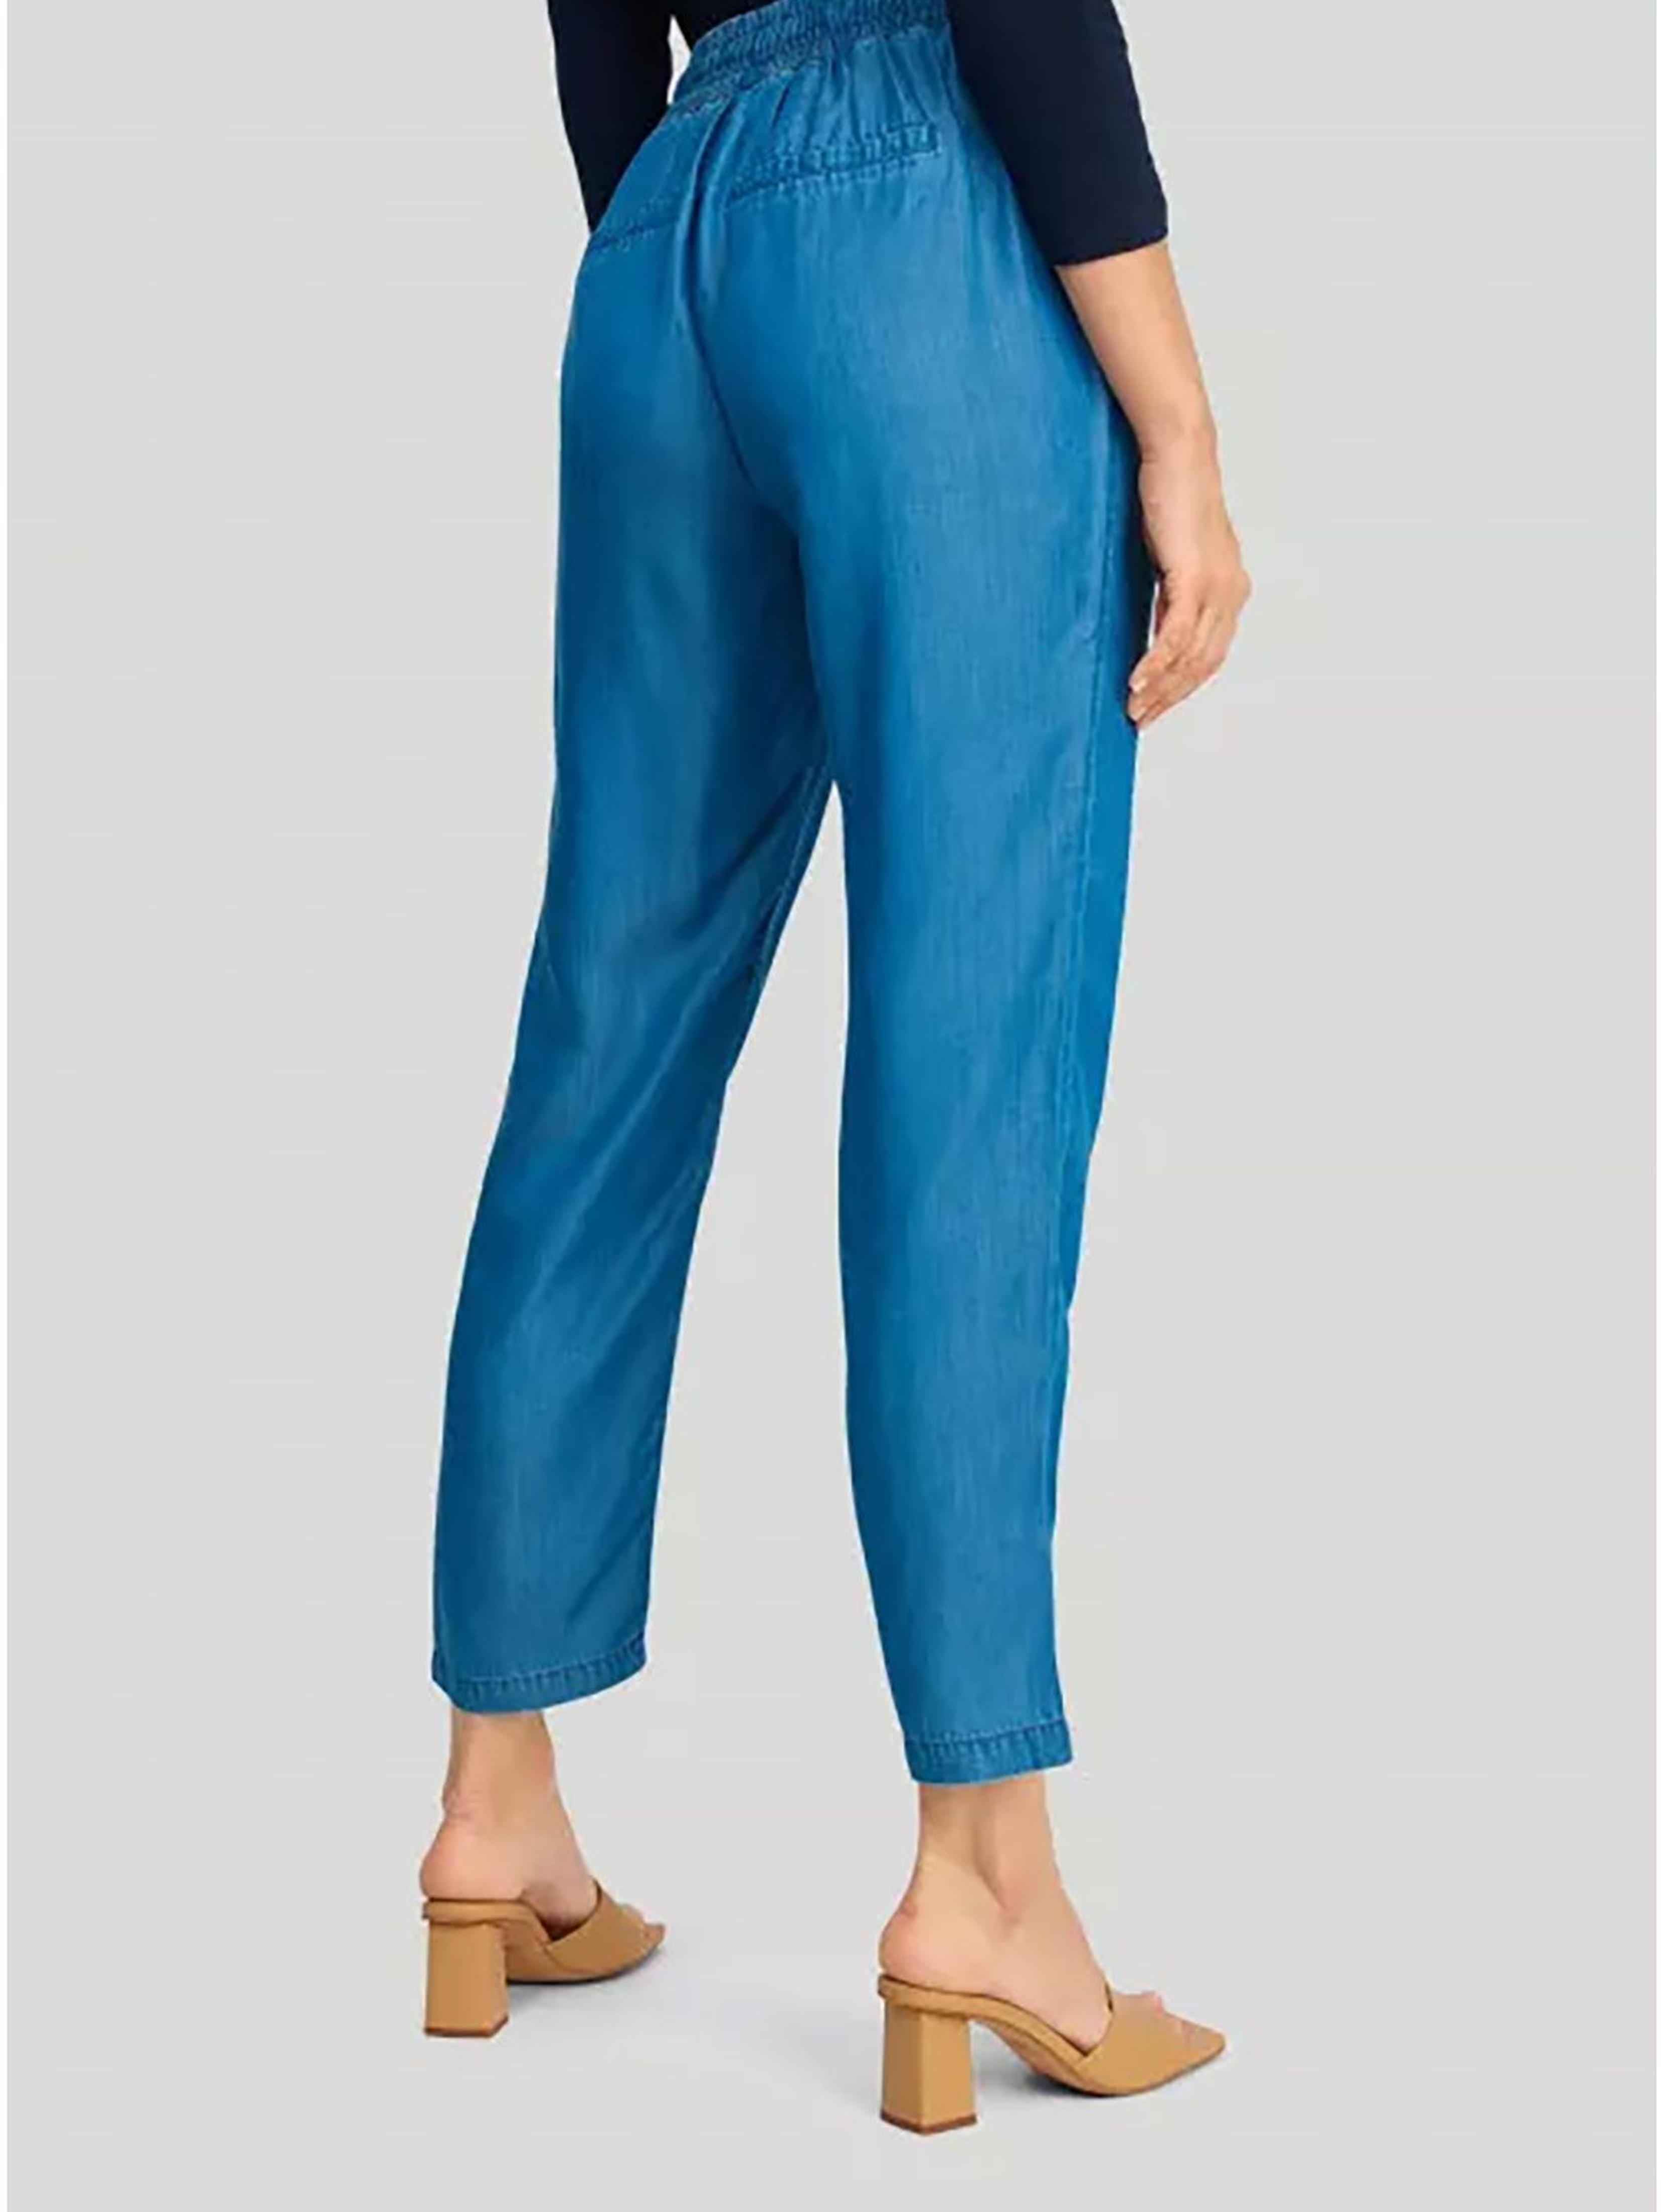 Jeansowe luźne spodnie damskie - niebieskie